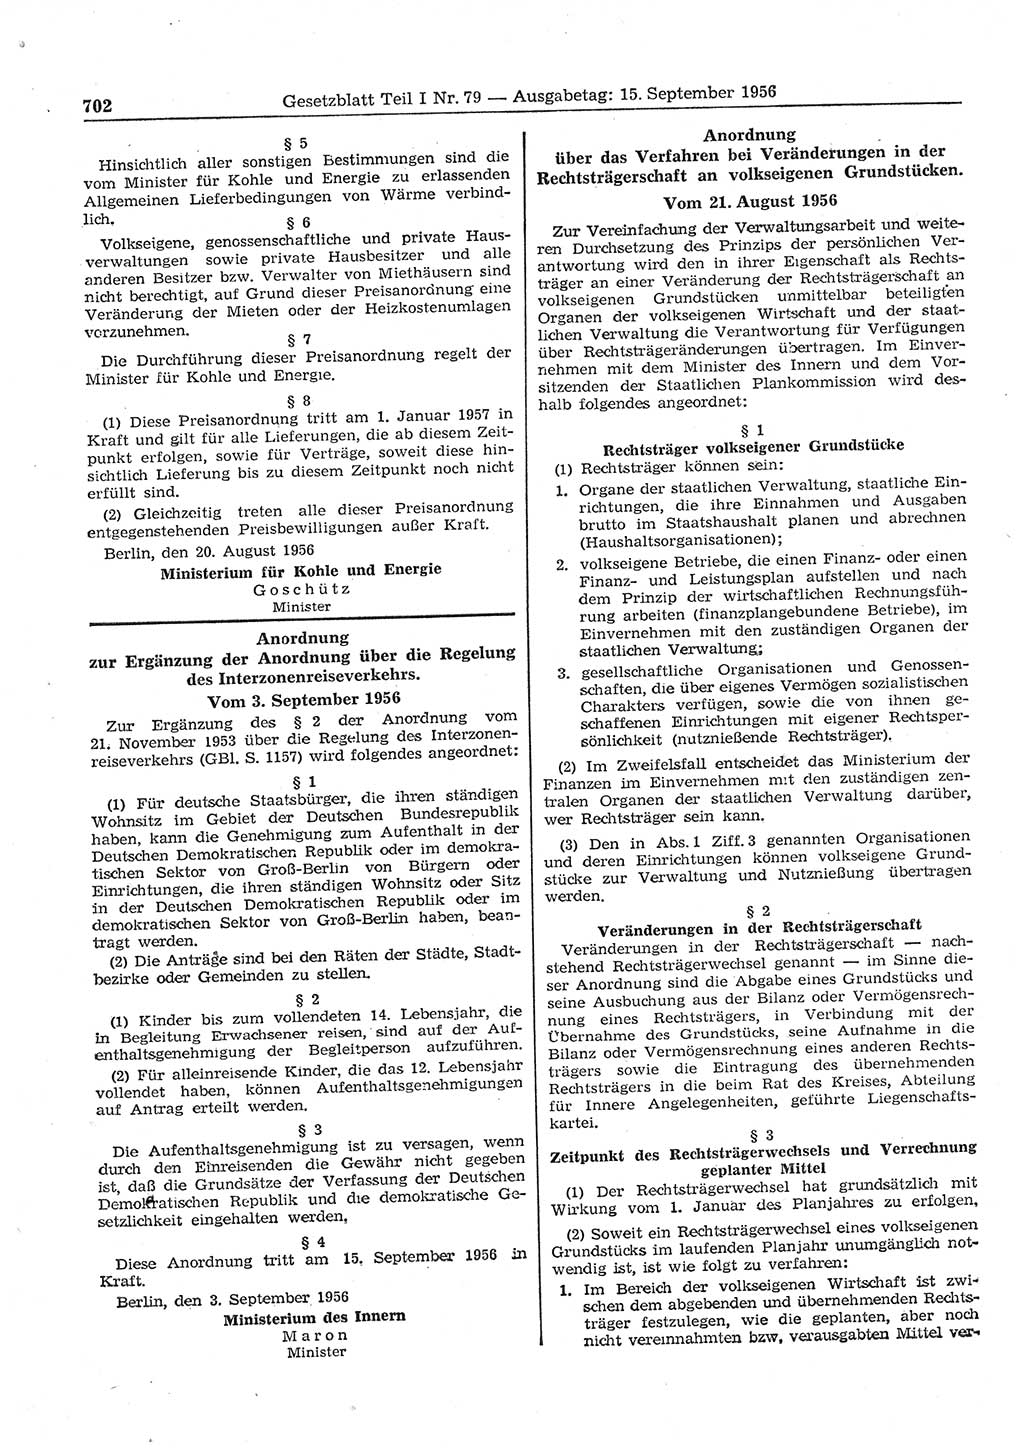 Gesetzblatt (GBl.) der Deutschen Demokratischen Republik (DDR) Teil Ⅰ 1956, Seite 702 (GBl. DDR Ⅰ 1956, S. 702)